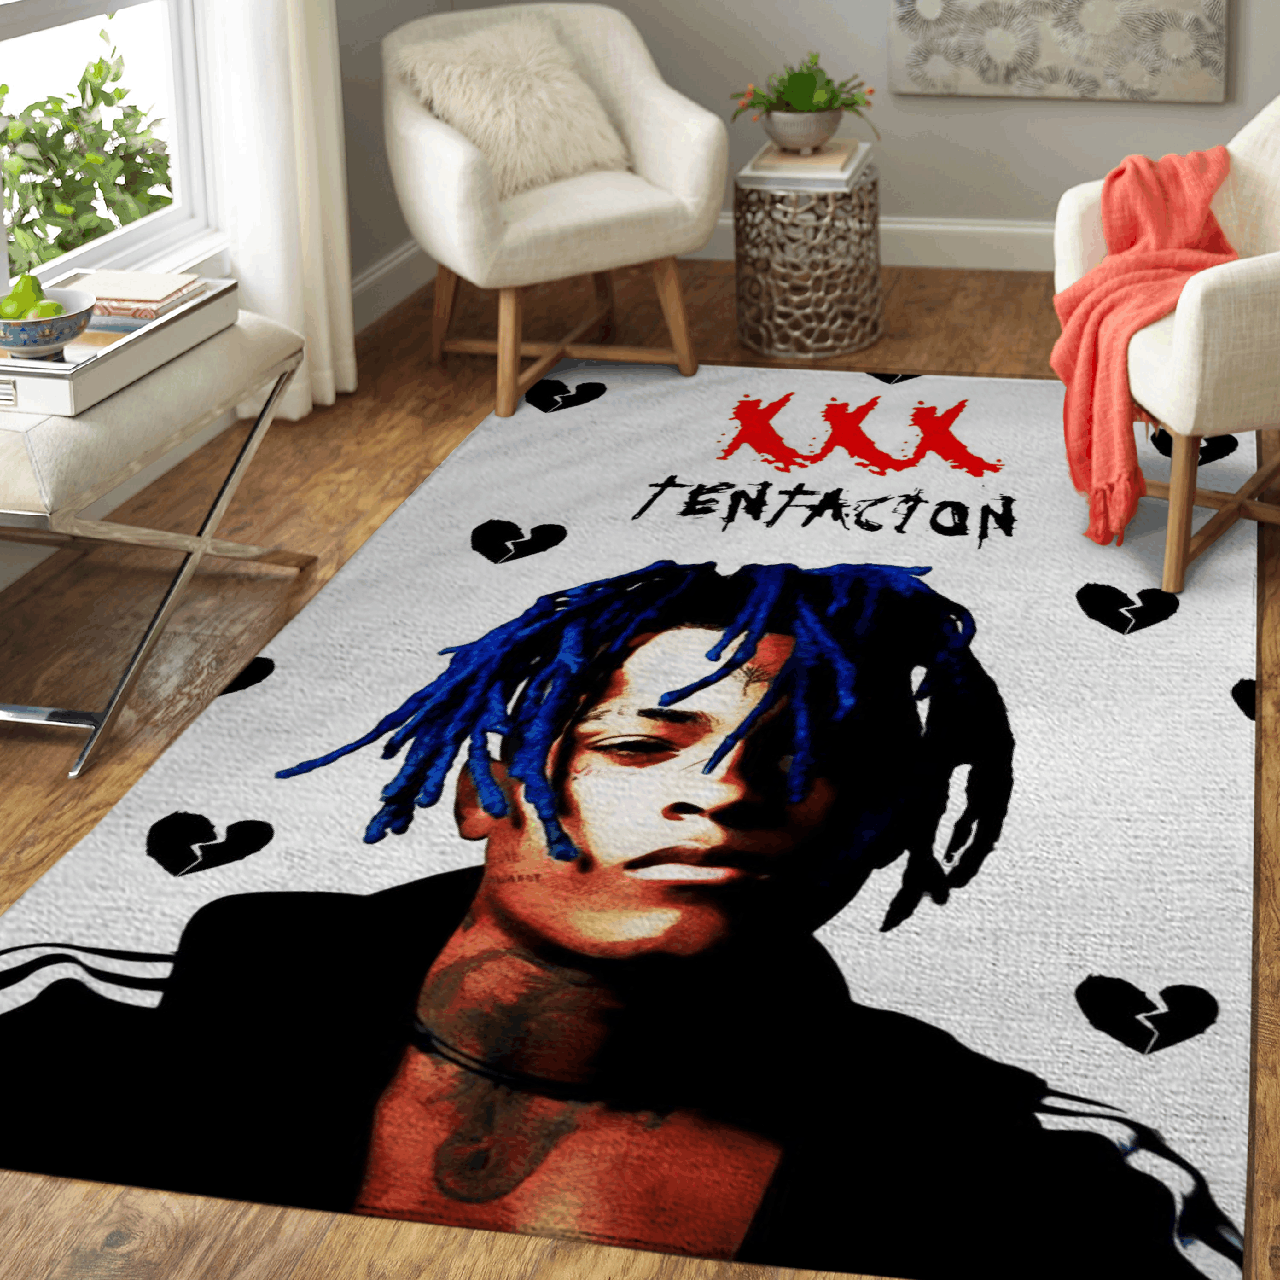 XXXTentacion The Legend rapper Pop Art For Fans Area Rug